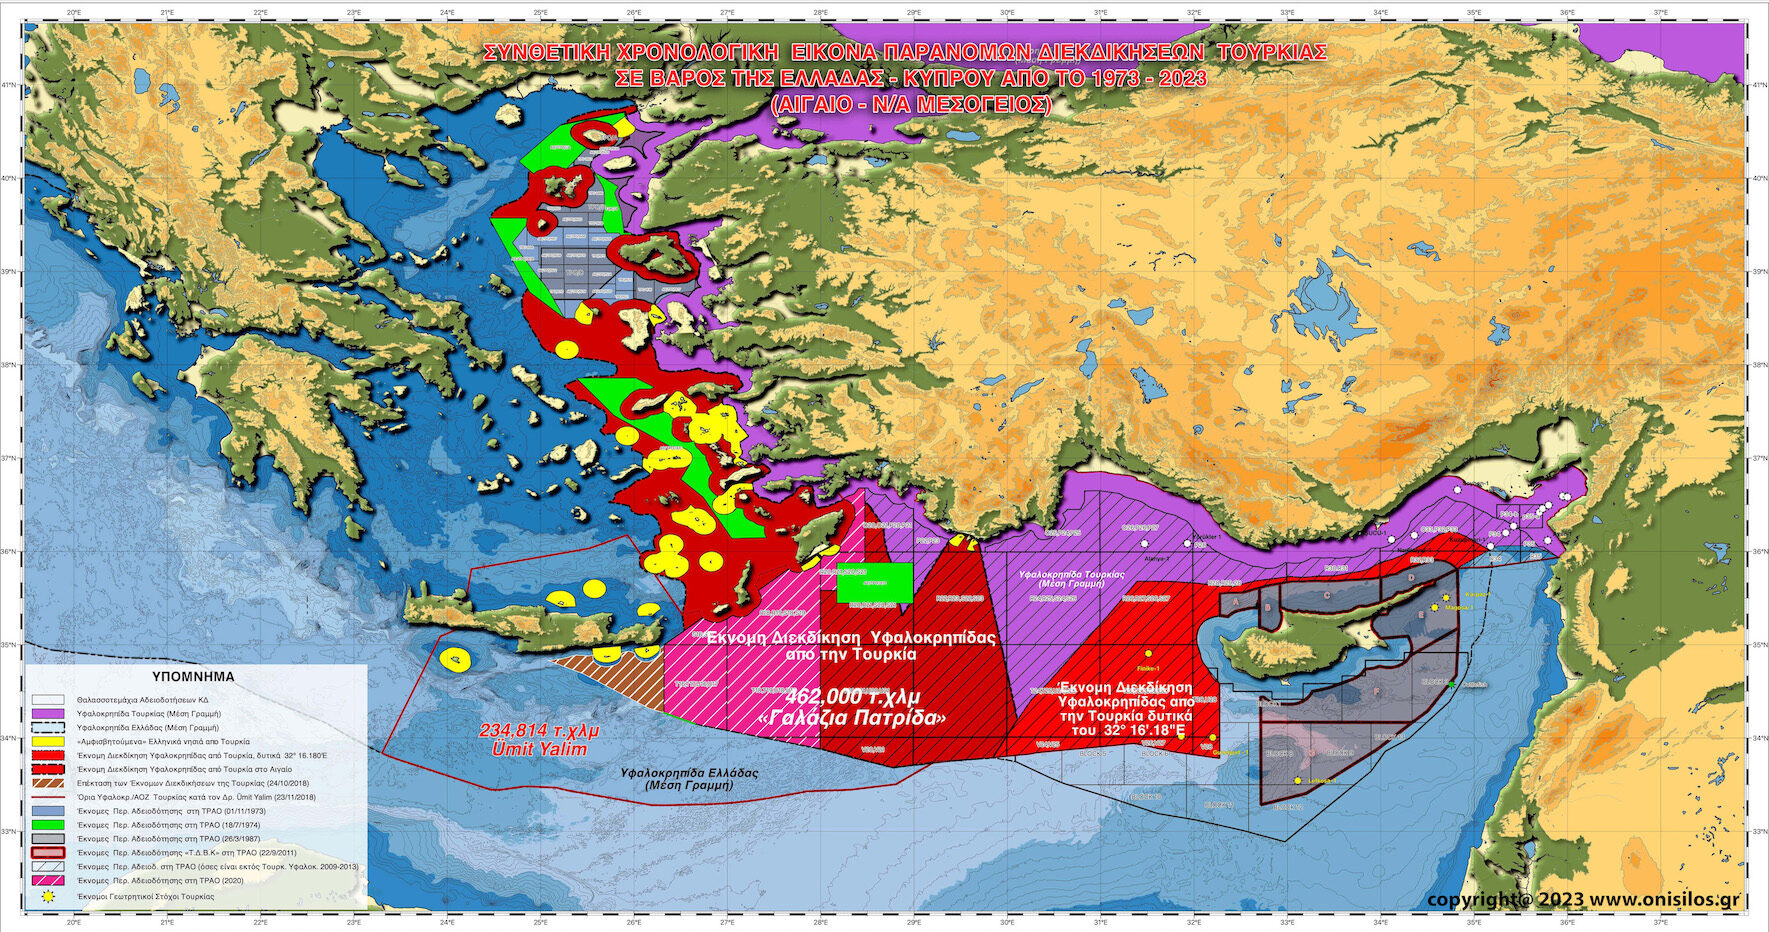 Σαρώνει ο «Θαλασσόλυκος» και «πνίγει την Κύπρο» – Ενισχύουν λιμάνια και υποδομές (ΑΠΟΚΛΕΙΣΤΙΚΕΣ ΔΟΡΥΦΟΡΙΚΕΣ ΦΩΤΟΓΡΑΦΙΕΣ)